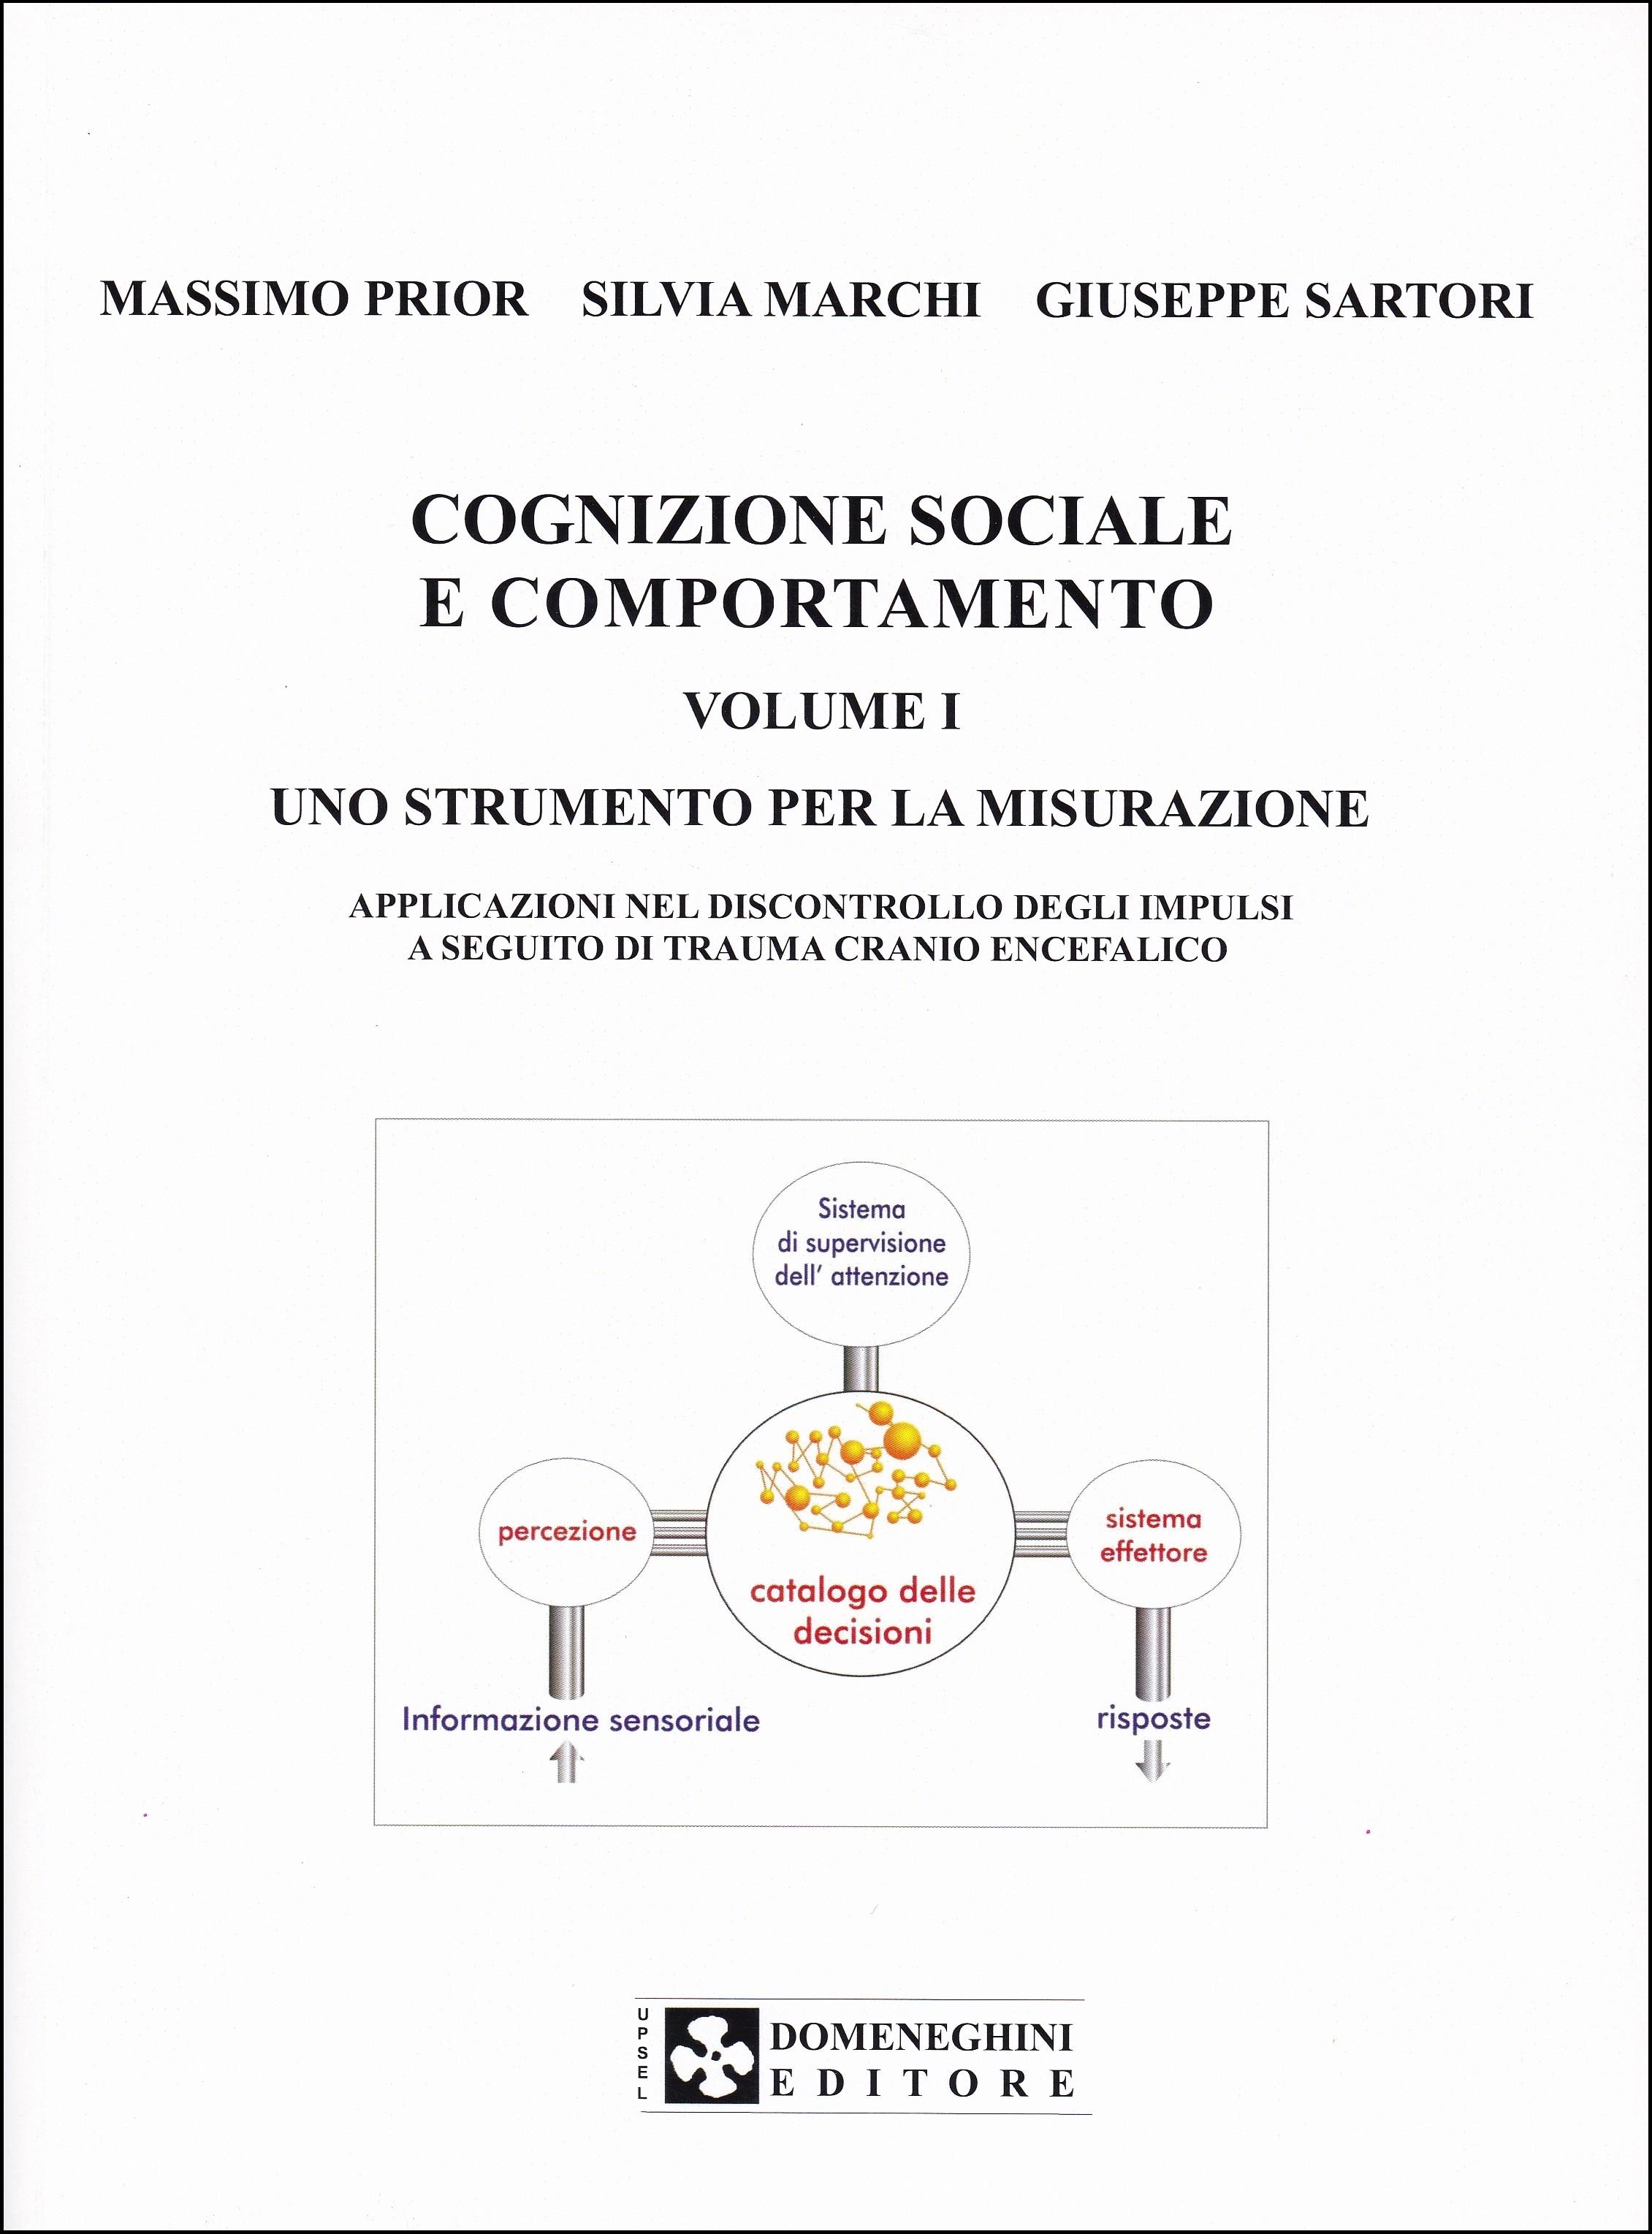 Prior, Marchi, Sartori. Cognizione Sociale e Comportamento. Vol.1. Uno Strumento per la Misurazione.